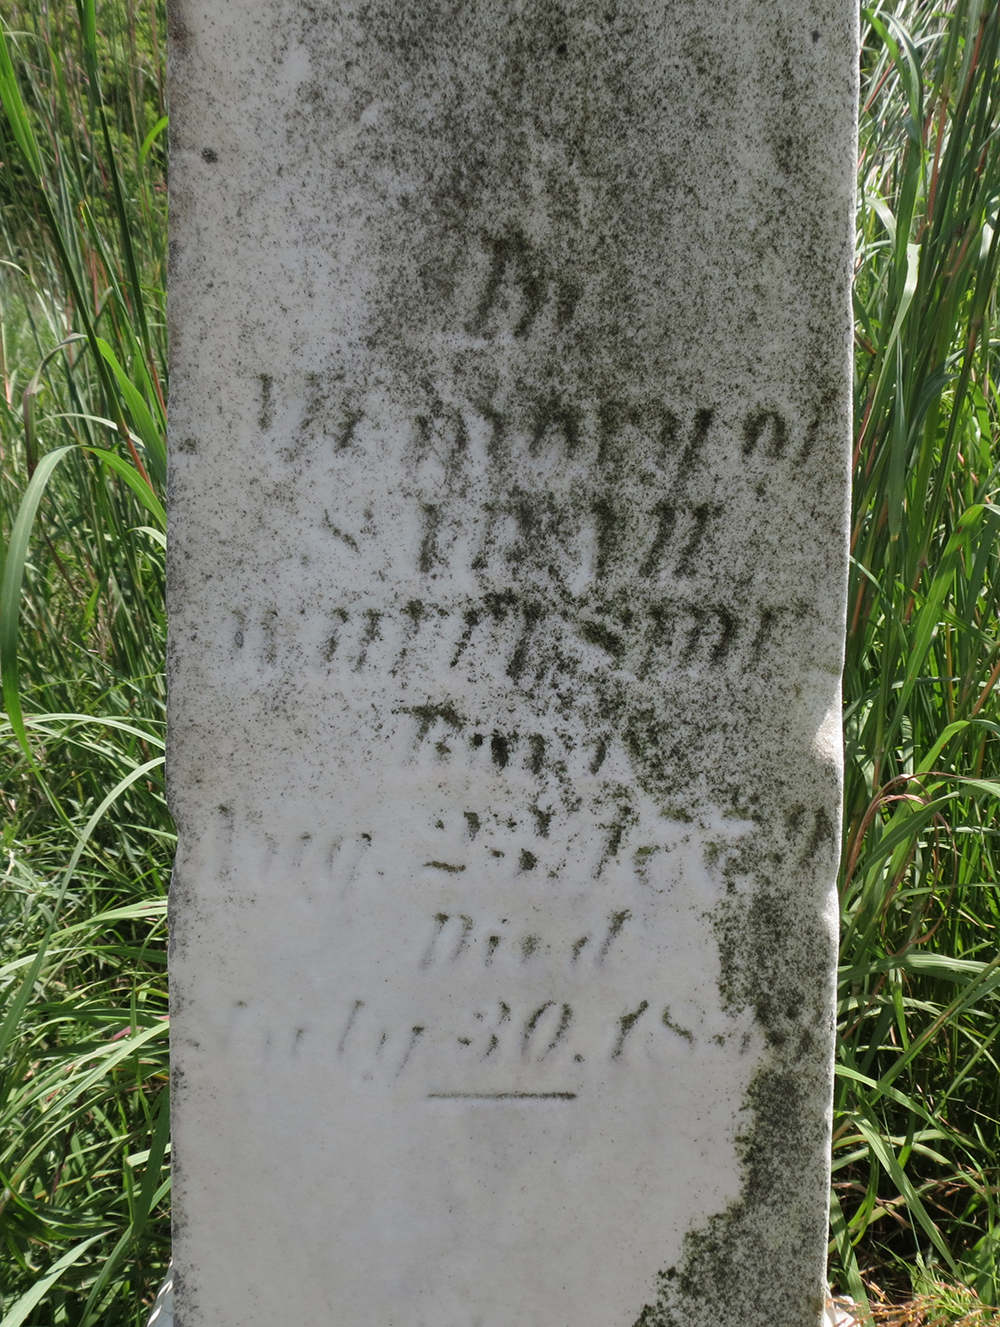 The grave of Sarah Whiteside